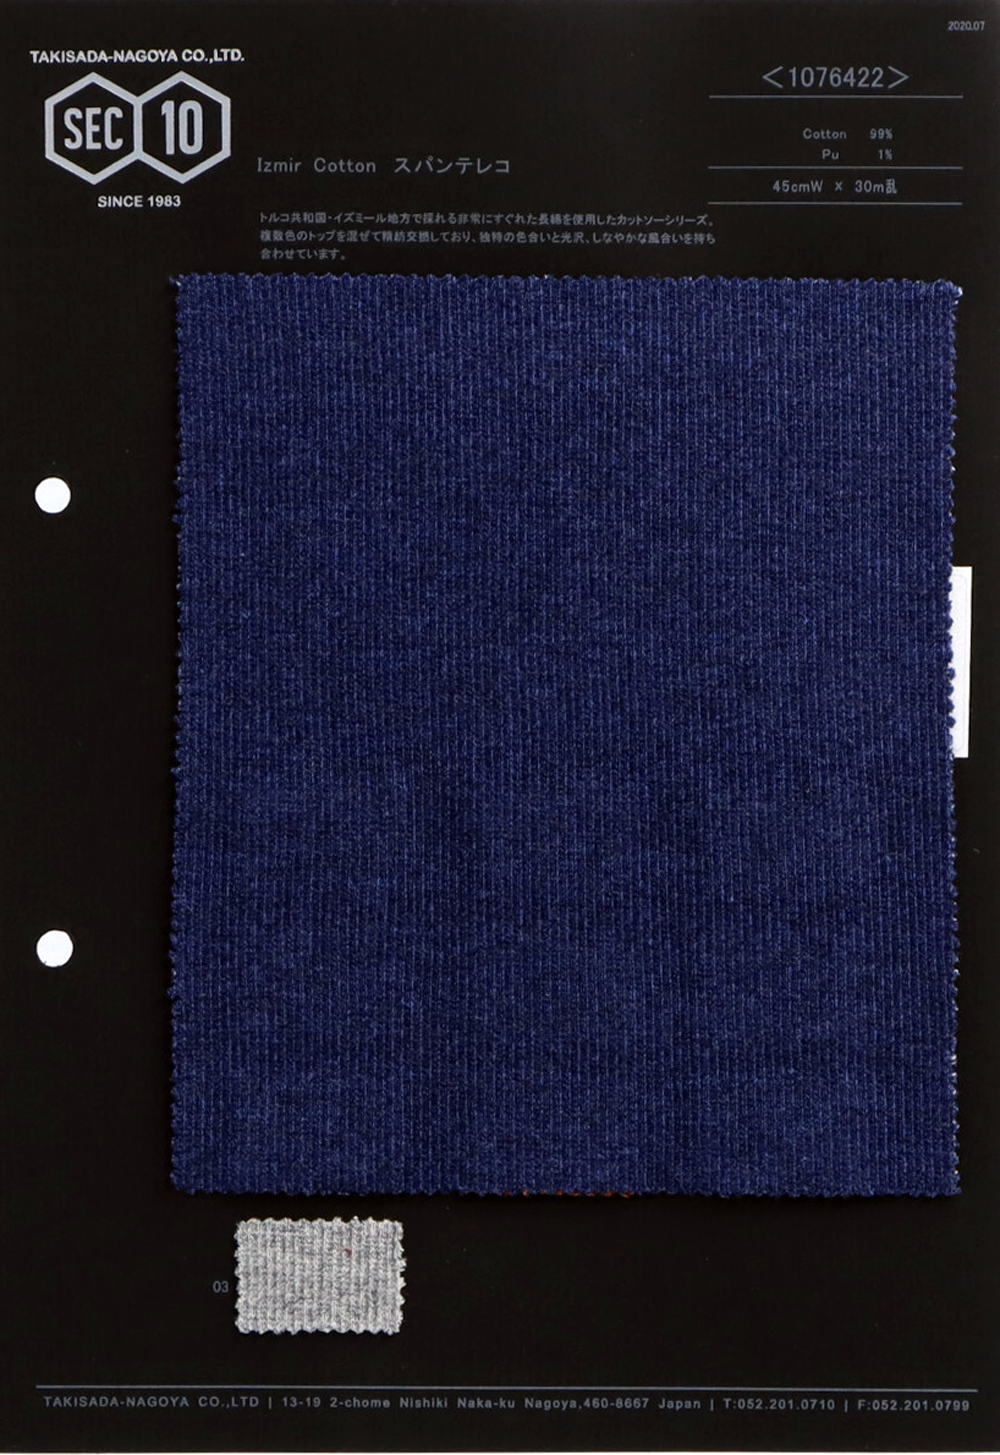 1076422 Izmir Cotton Span Teleco[Textile / Fabric] Takisada Nagoya